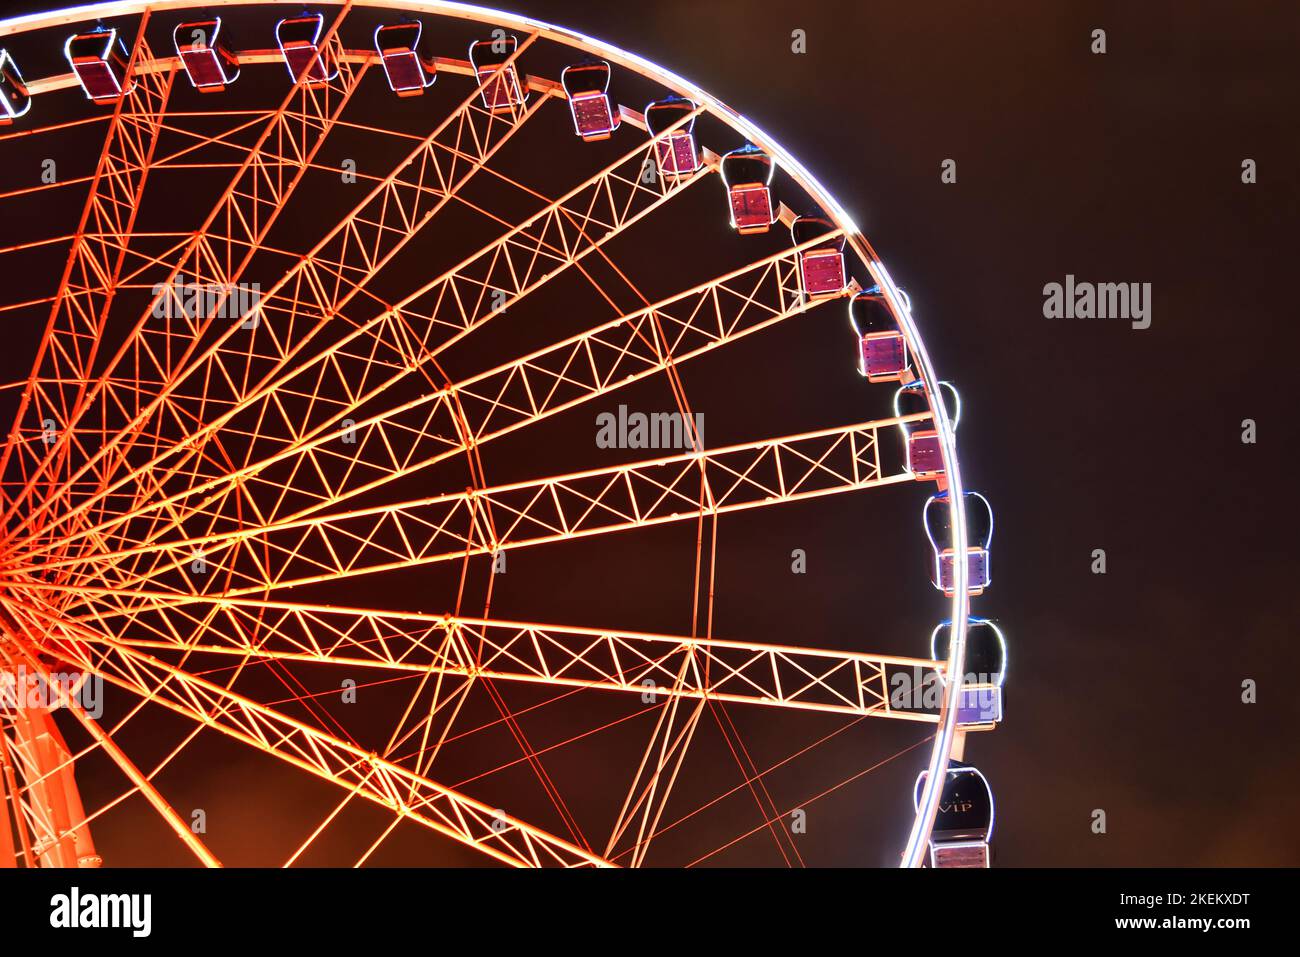 Beleuchtetes Riesenrad 'Wheel of Vision' in der Düsseldorfer Altstadt, eine große Attraktion sowohl für Einheimische als auch Besucher. Er ist 55 Meter/180 Fuß hoch. Stockfoto